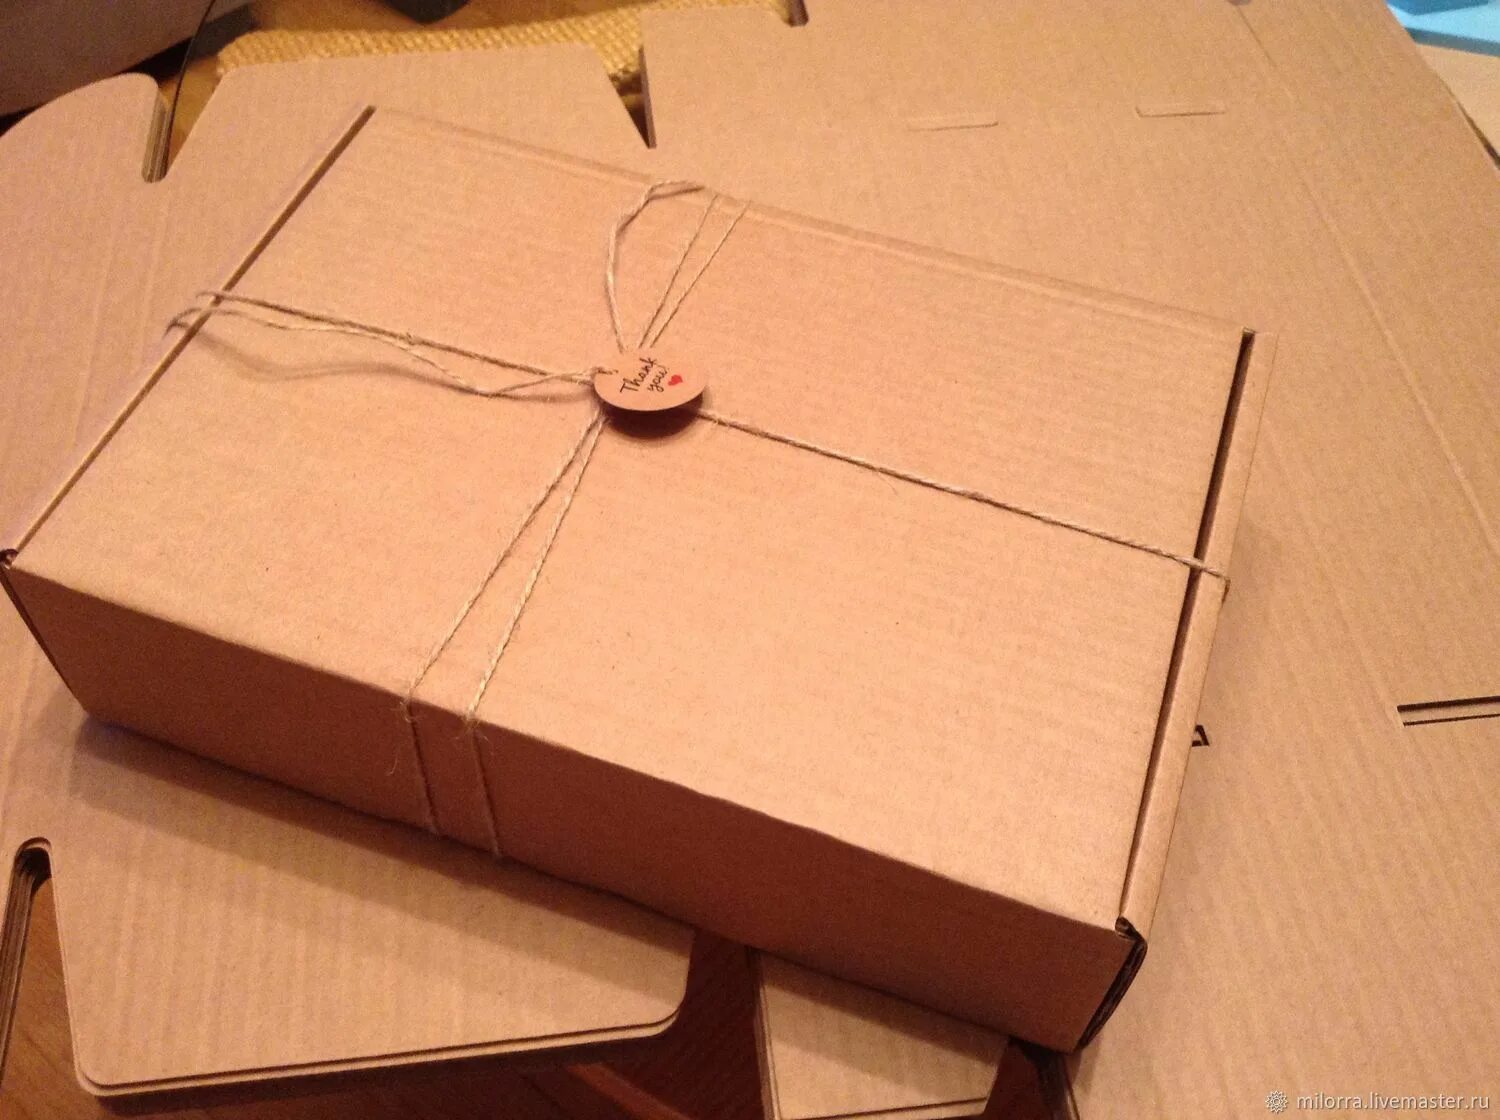 Коробка крафт 30х40х5. Коробка подарочная «Zand» m, крафт, самосборная, 23,5 х 17,5 х 6,3 см, картон. Коробка самосборная 130х90х70 крафт. Коробка крафт 10х10х5. Коробка а5 формата